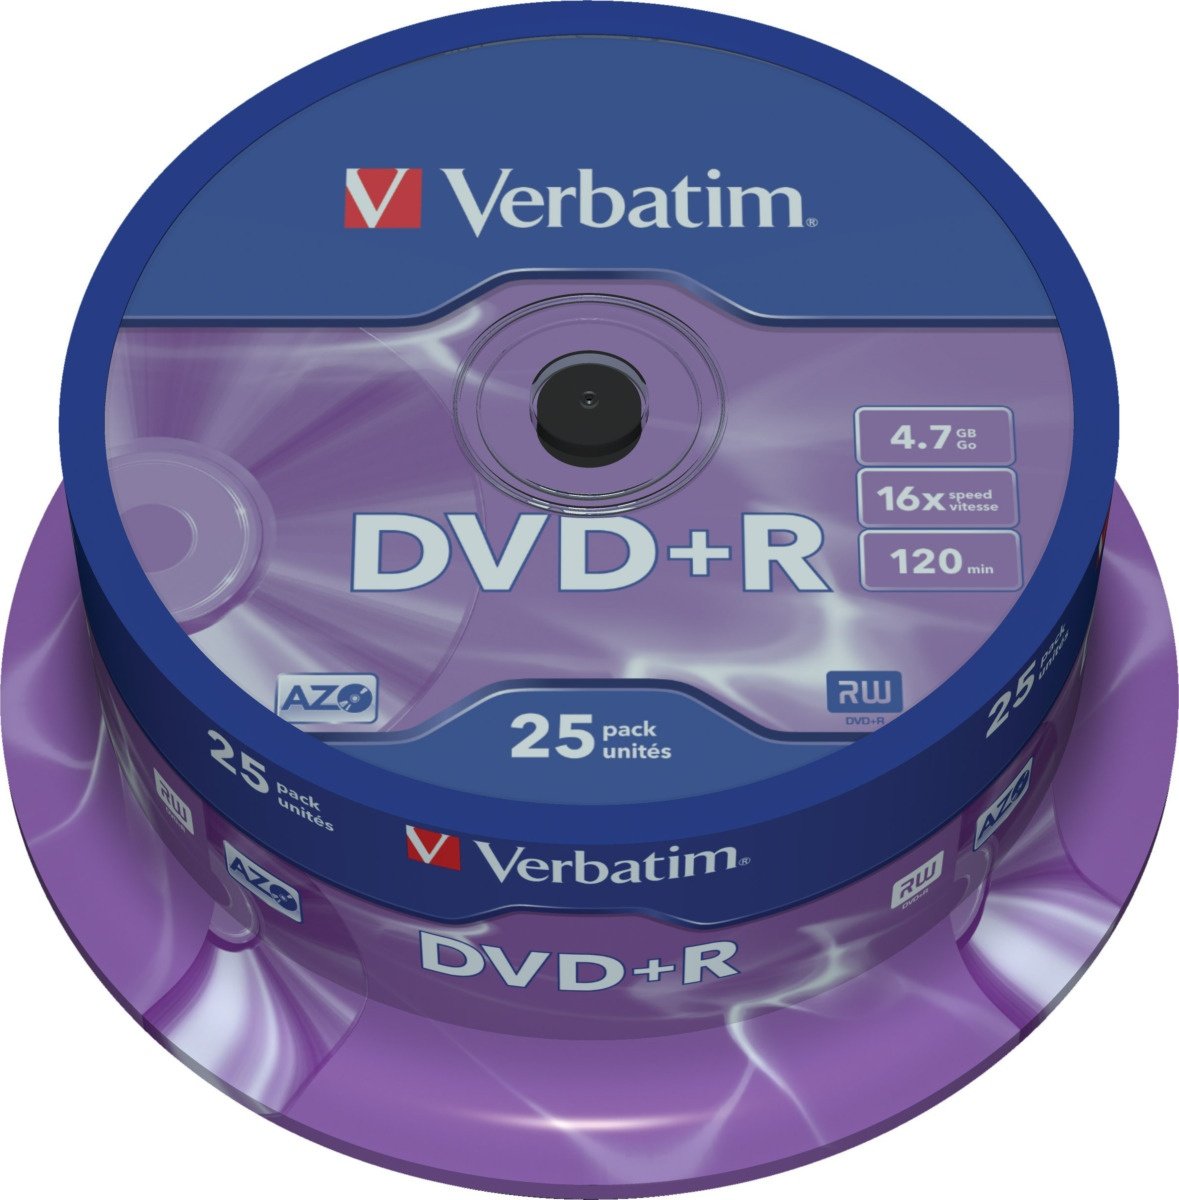 Verbatim DVD+R 16x 47GB/120min 25-pack spindel AZO